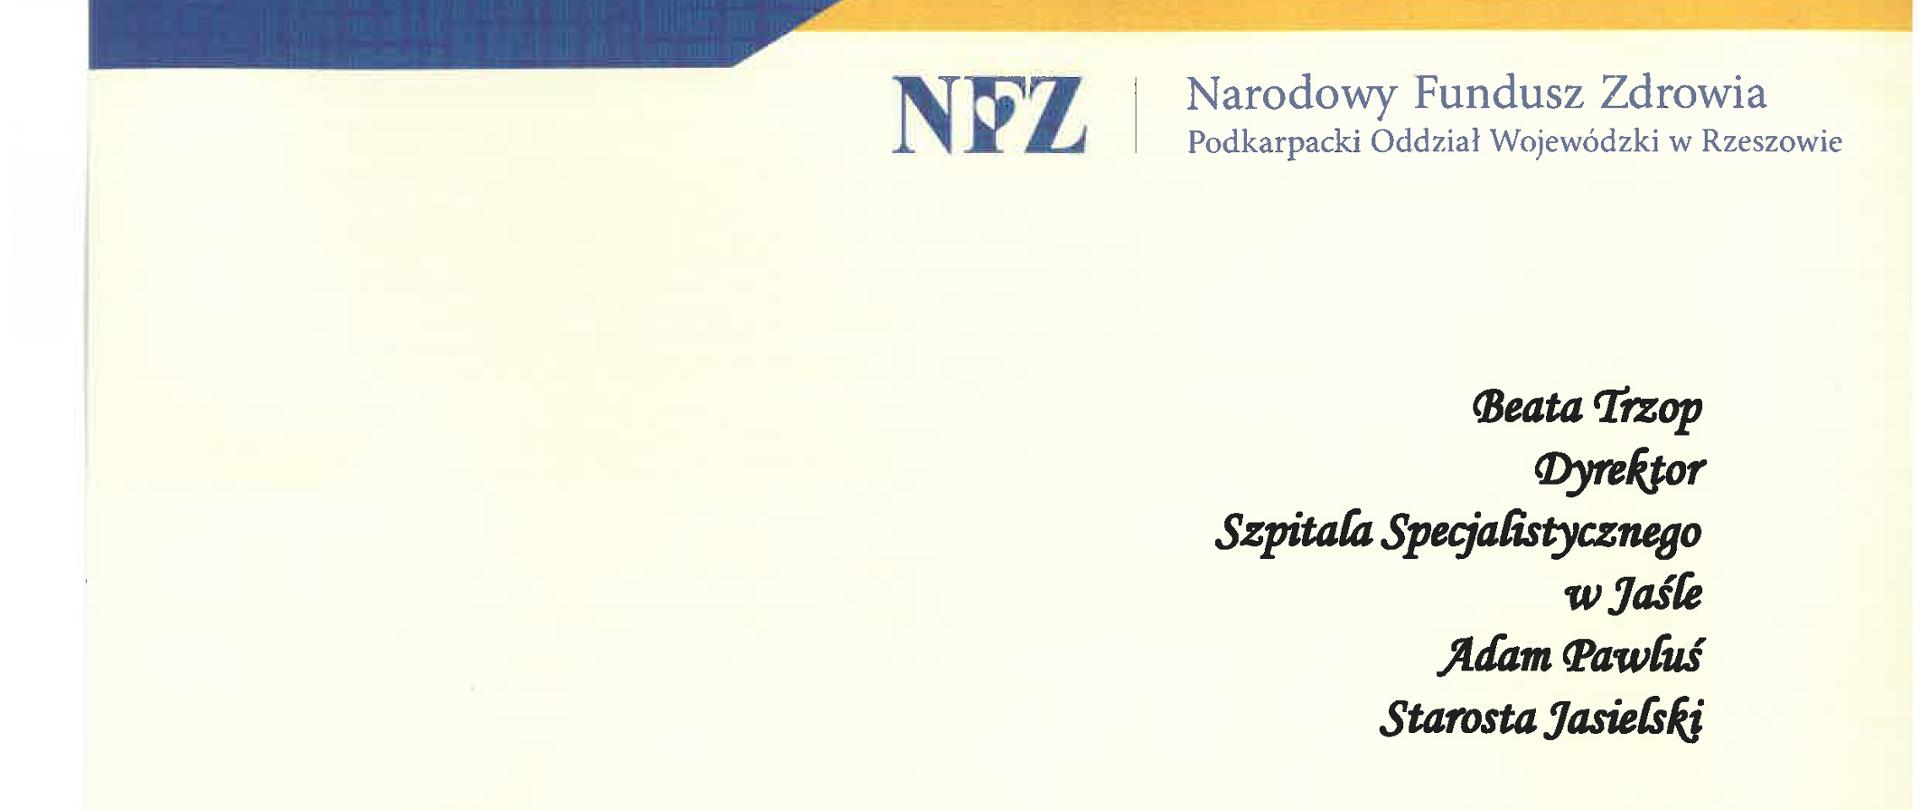 List gratulacyjny Katarzyny Kowalewskiej p.o. Dyrektora Podkarpackiego Oddziału Narodowego Funduszu Zdrowia z siedzibą w Rzeszowie.
